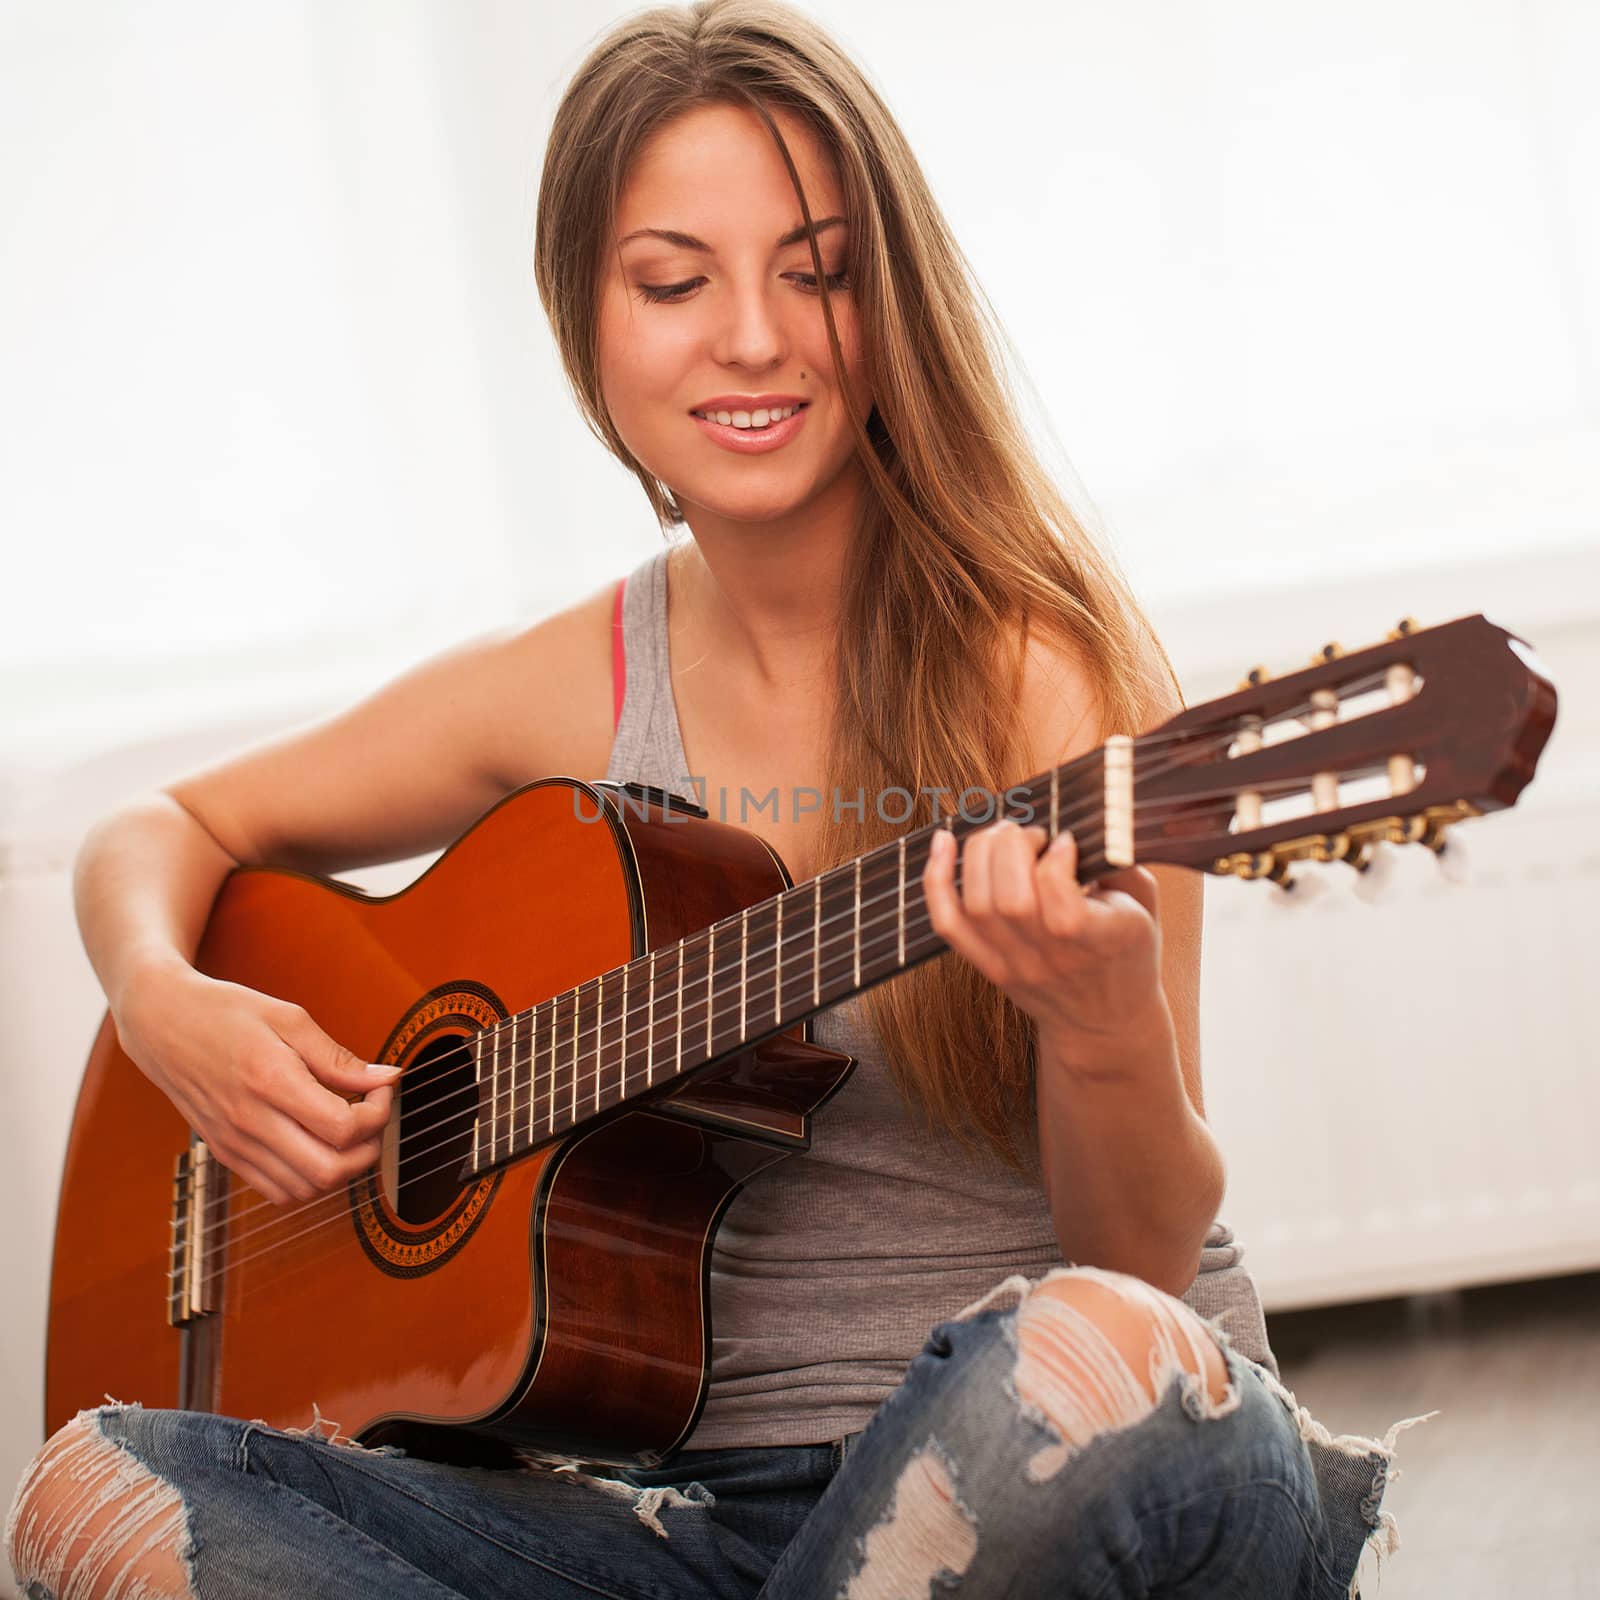 Young beautiful woman playing guitar by rufatjumali